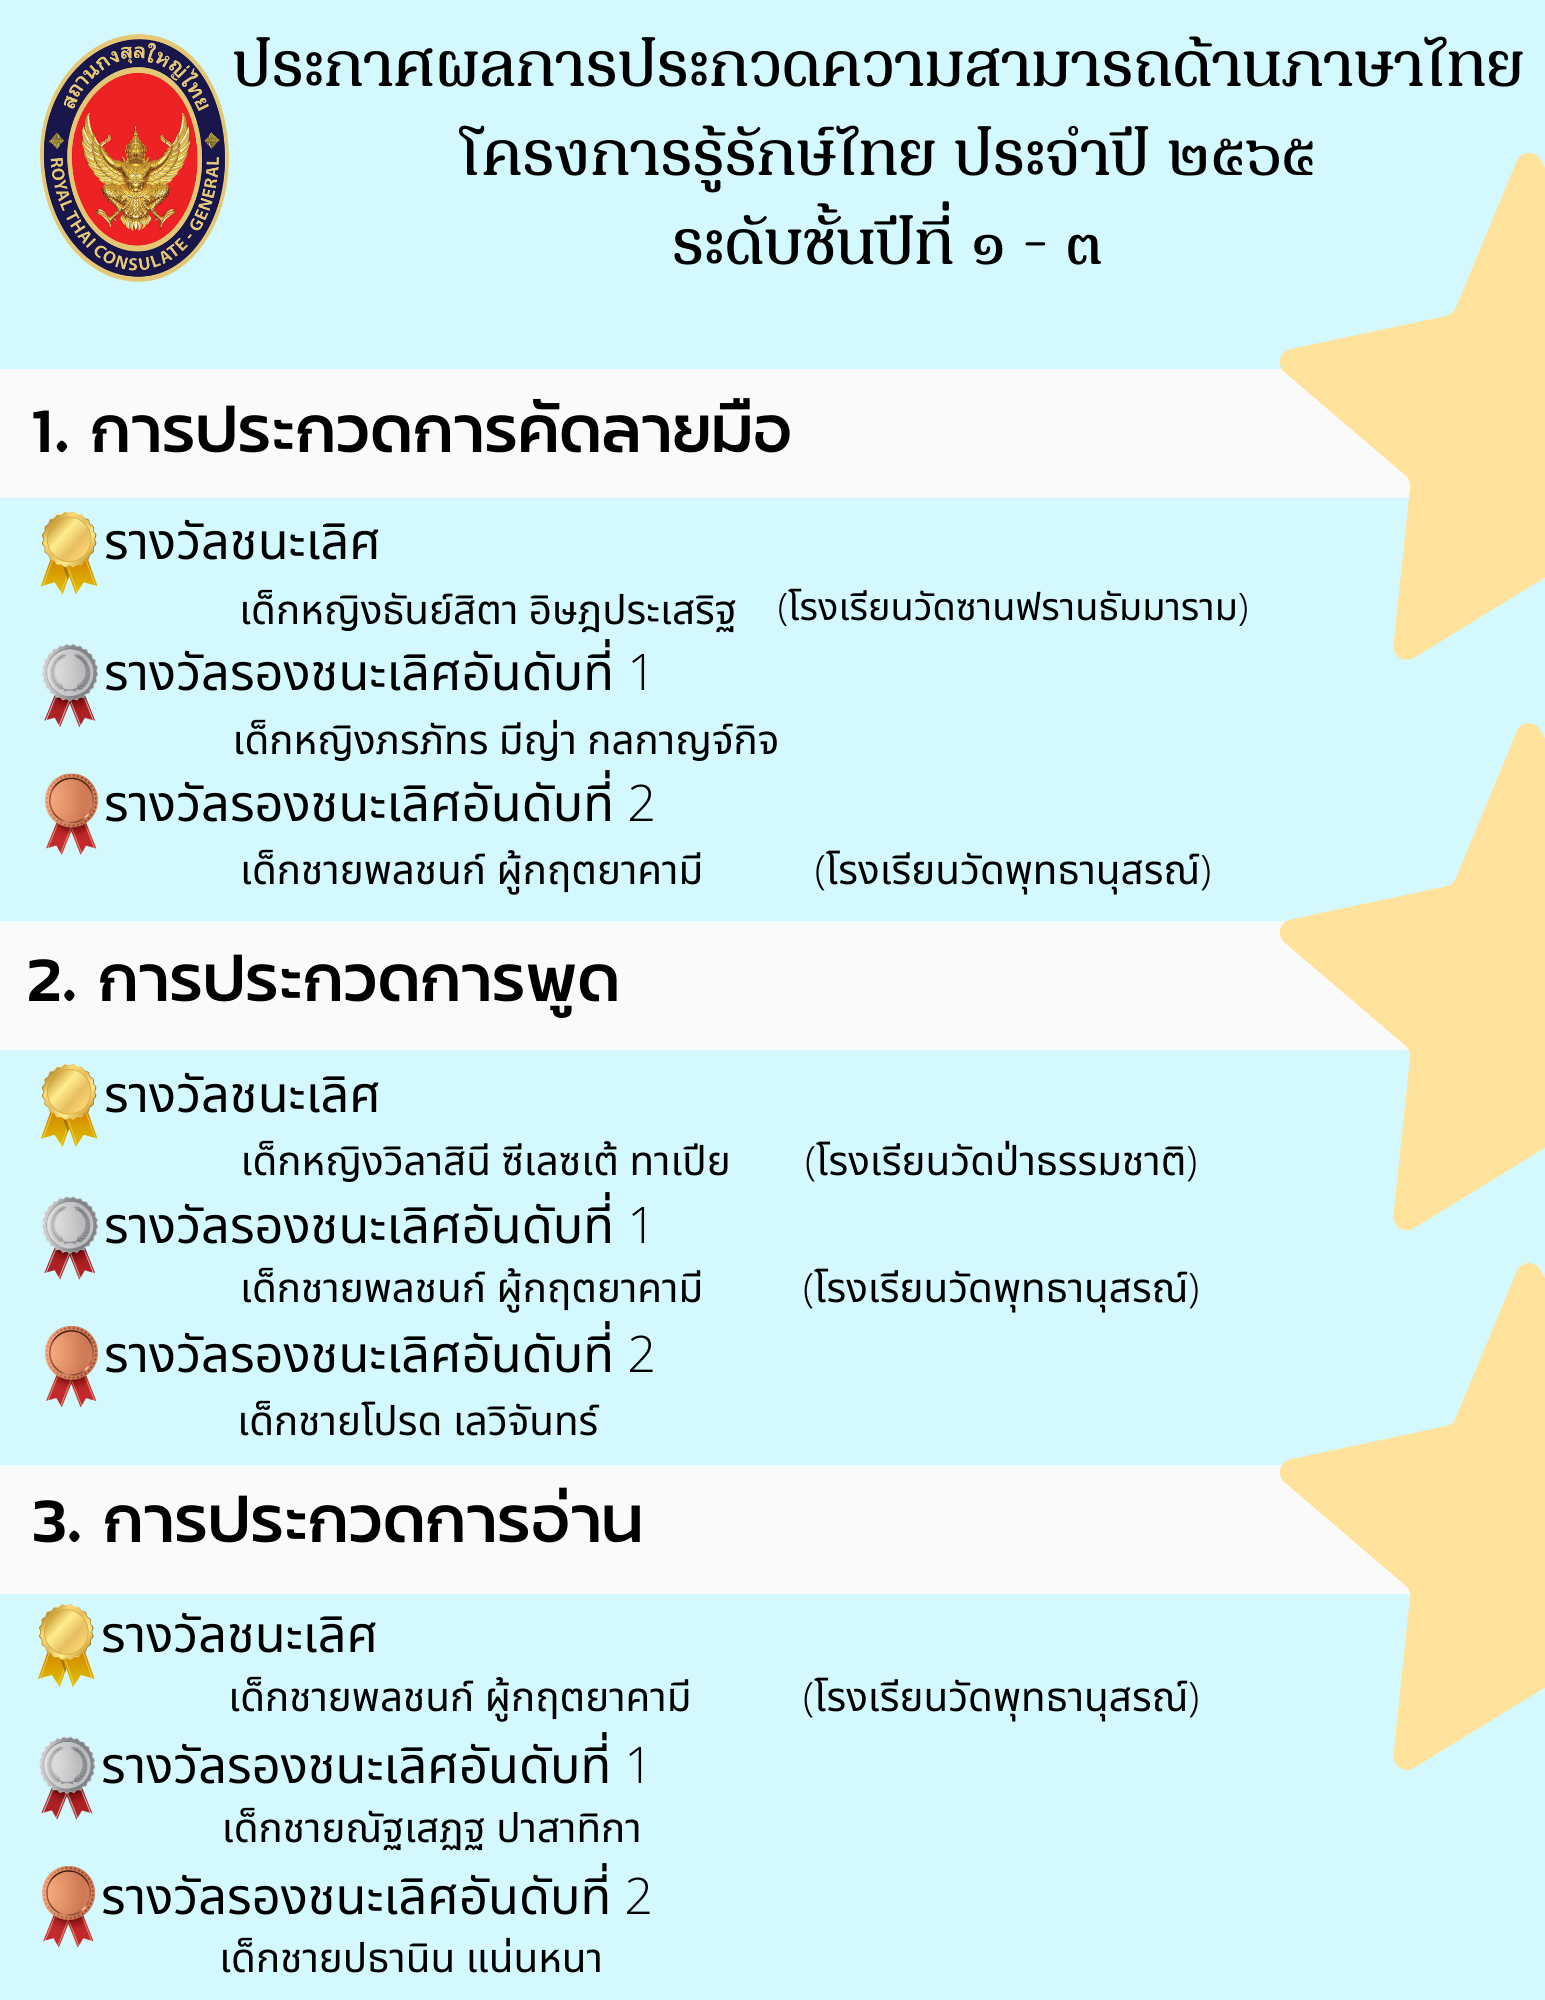 ประกาศผลการประกวดความสามารถด้านภาษาไทย_1-3